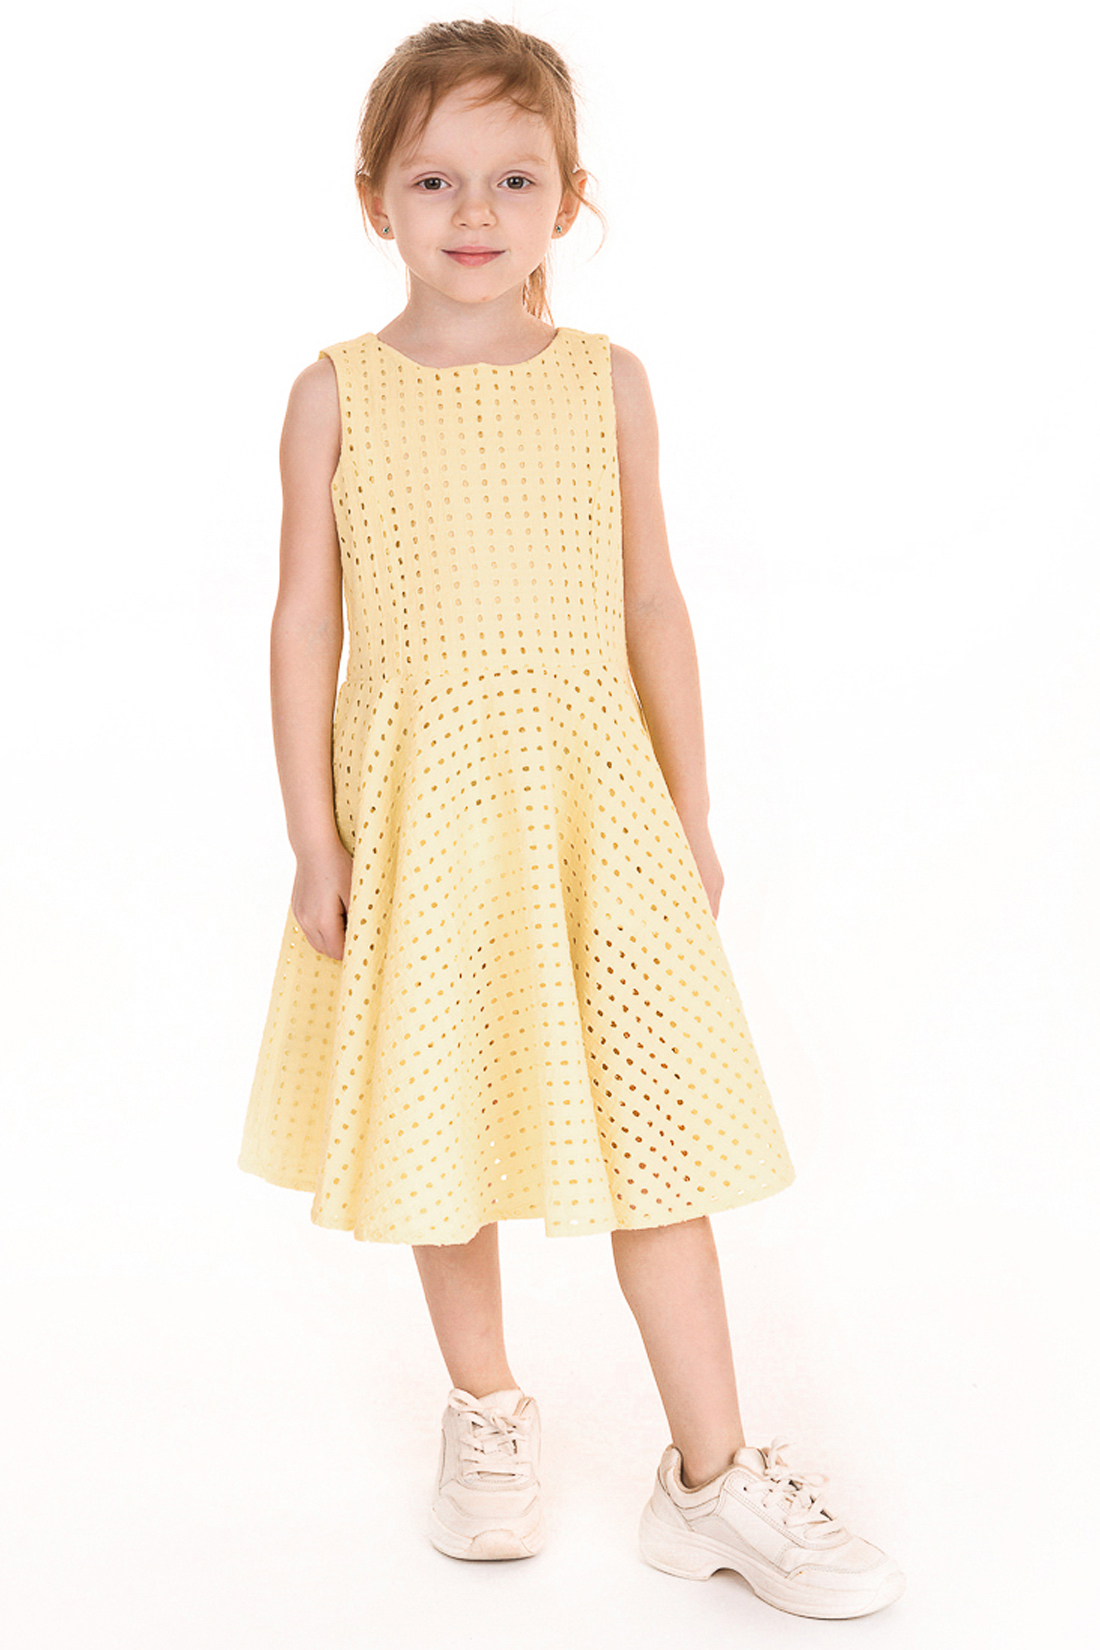 Платье для девочки (арт. baon BK459007), размер 98-104, цвет желтый